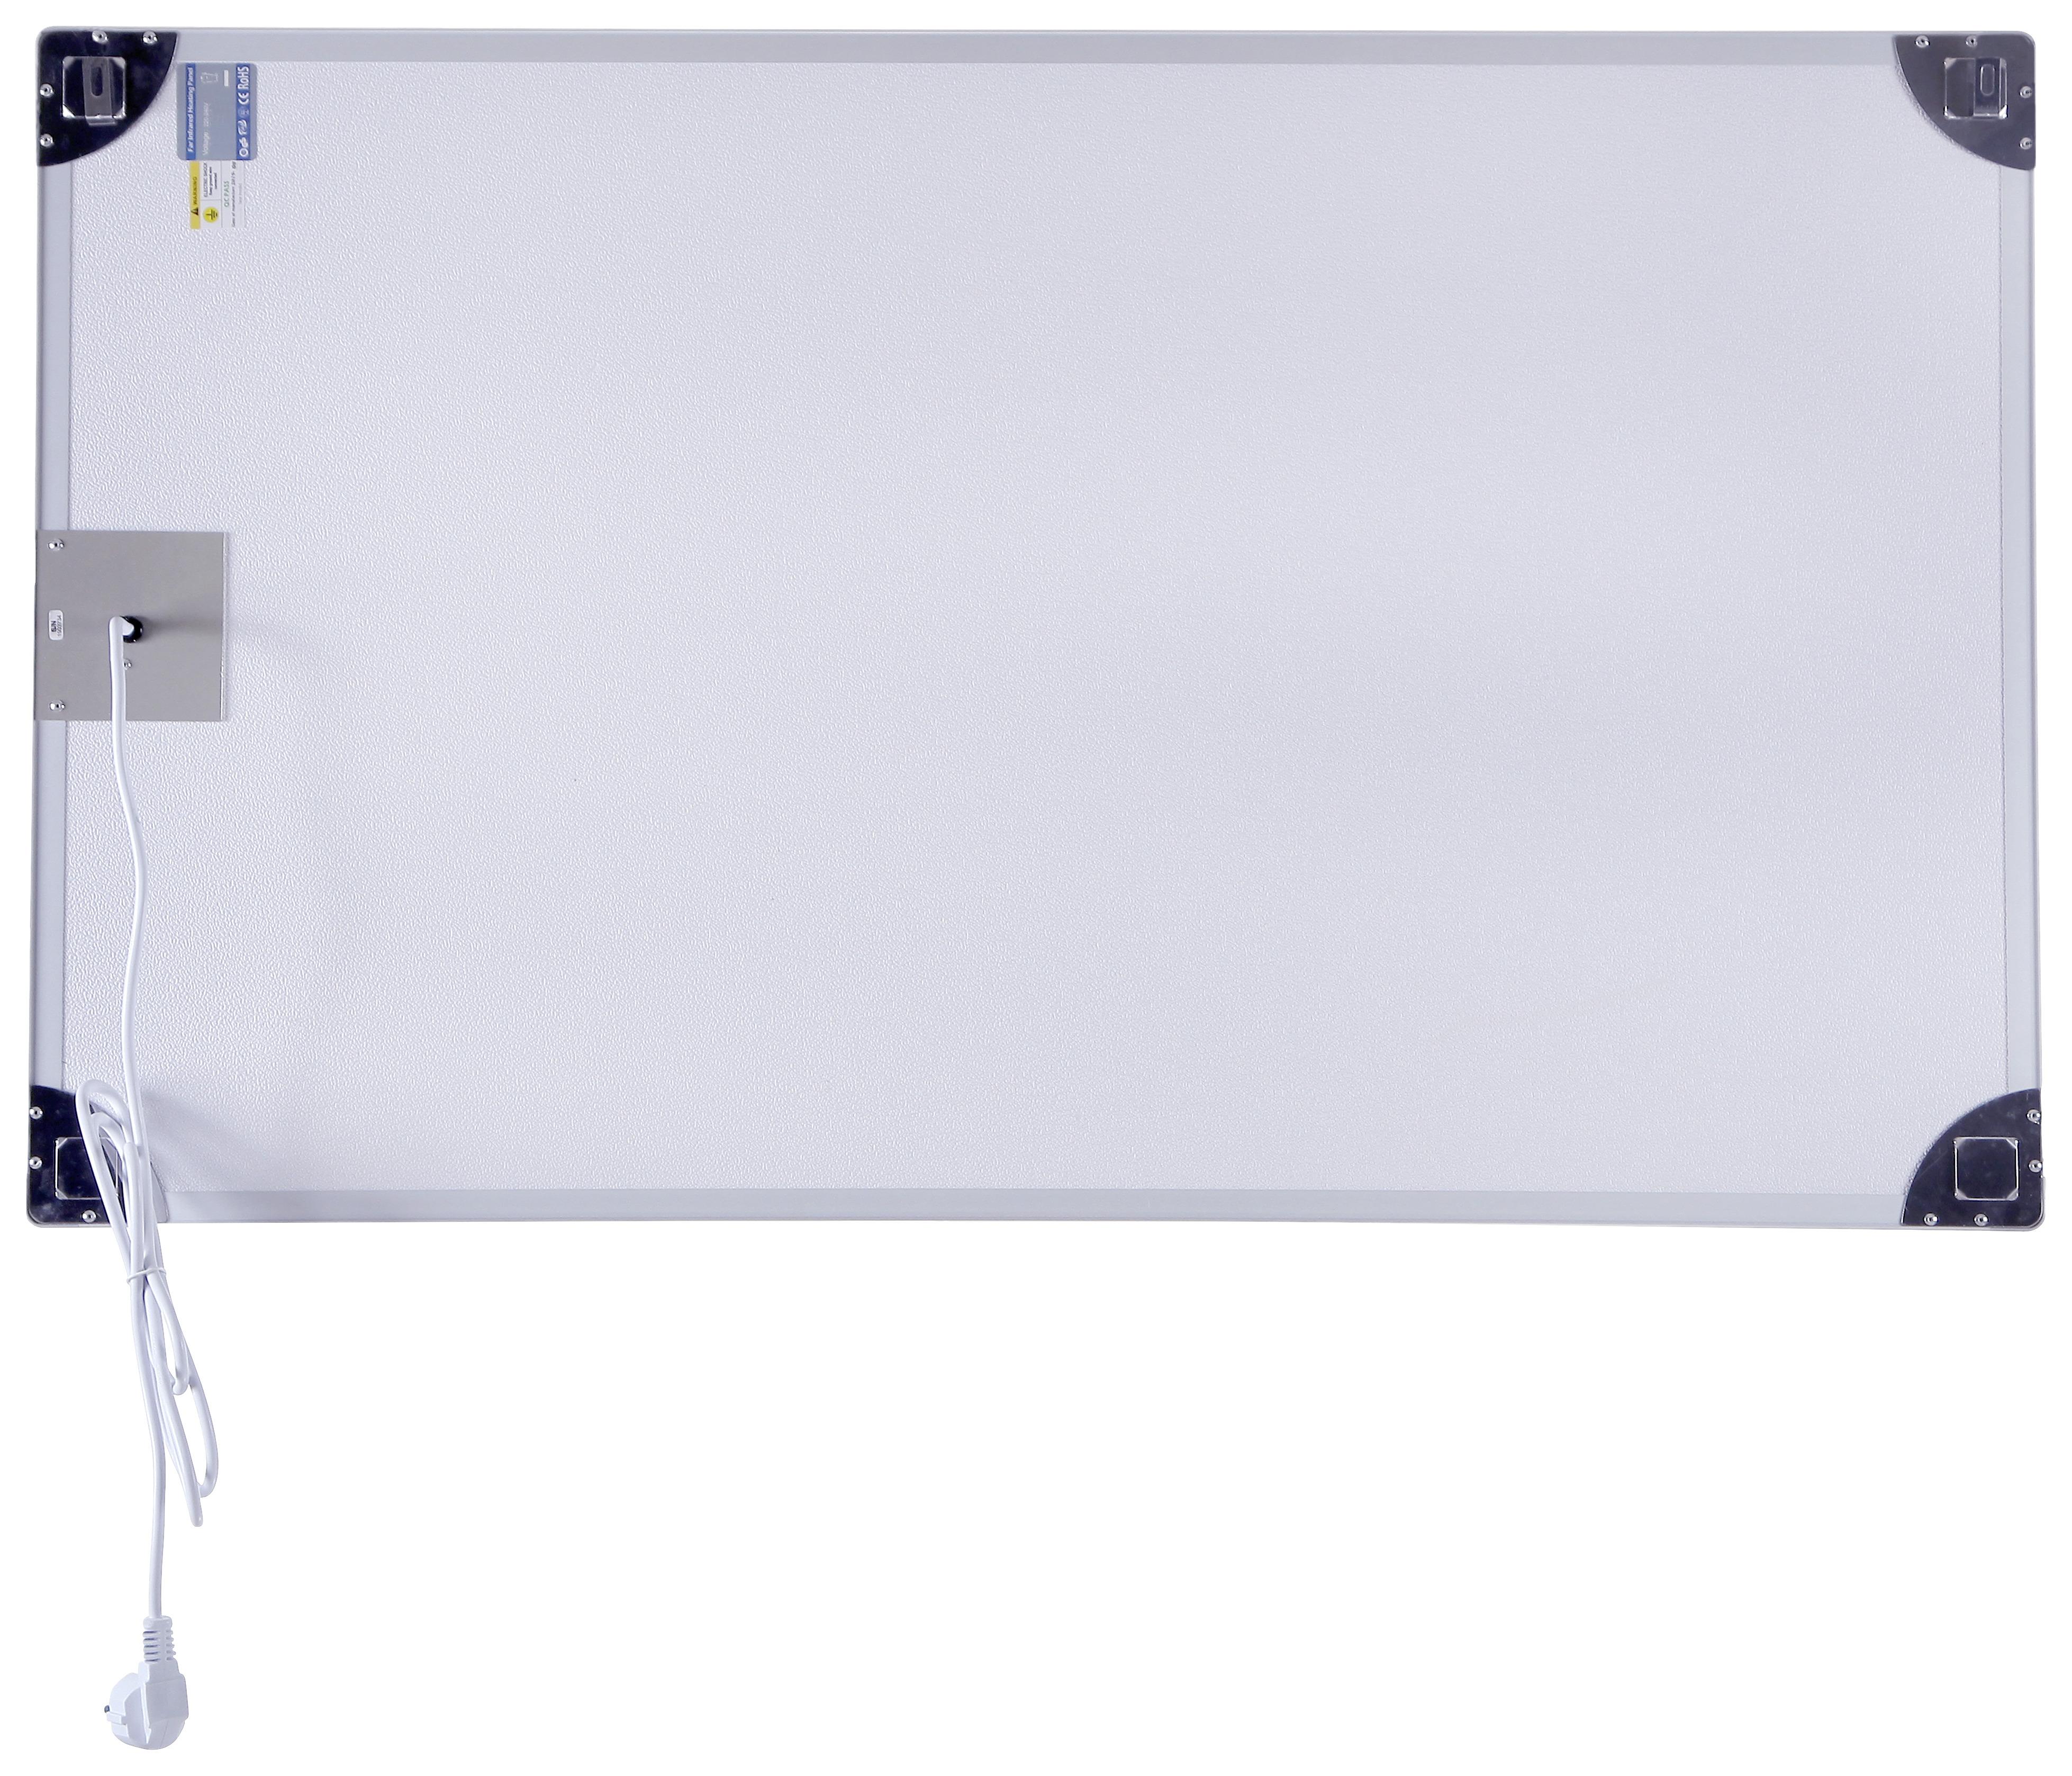 Infrarot Heizung 720 W Heatforce Ir. 120x60 cm - Weiß, MODERN, Metall (120/60/2,2cm)